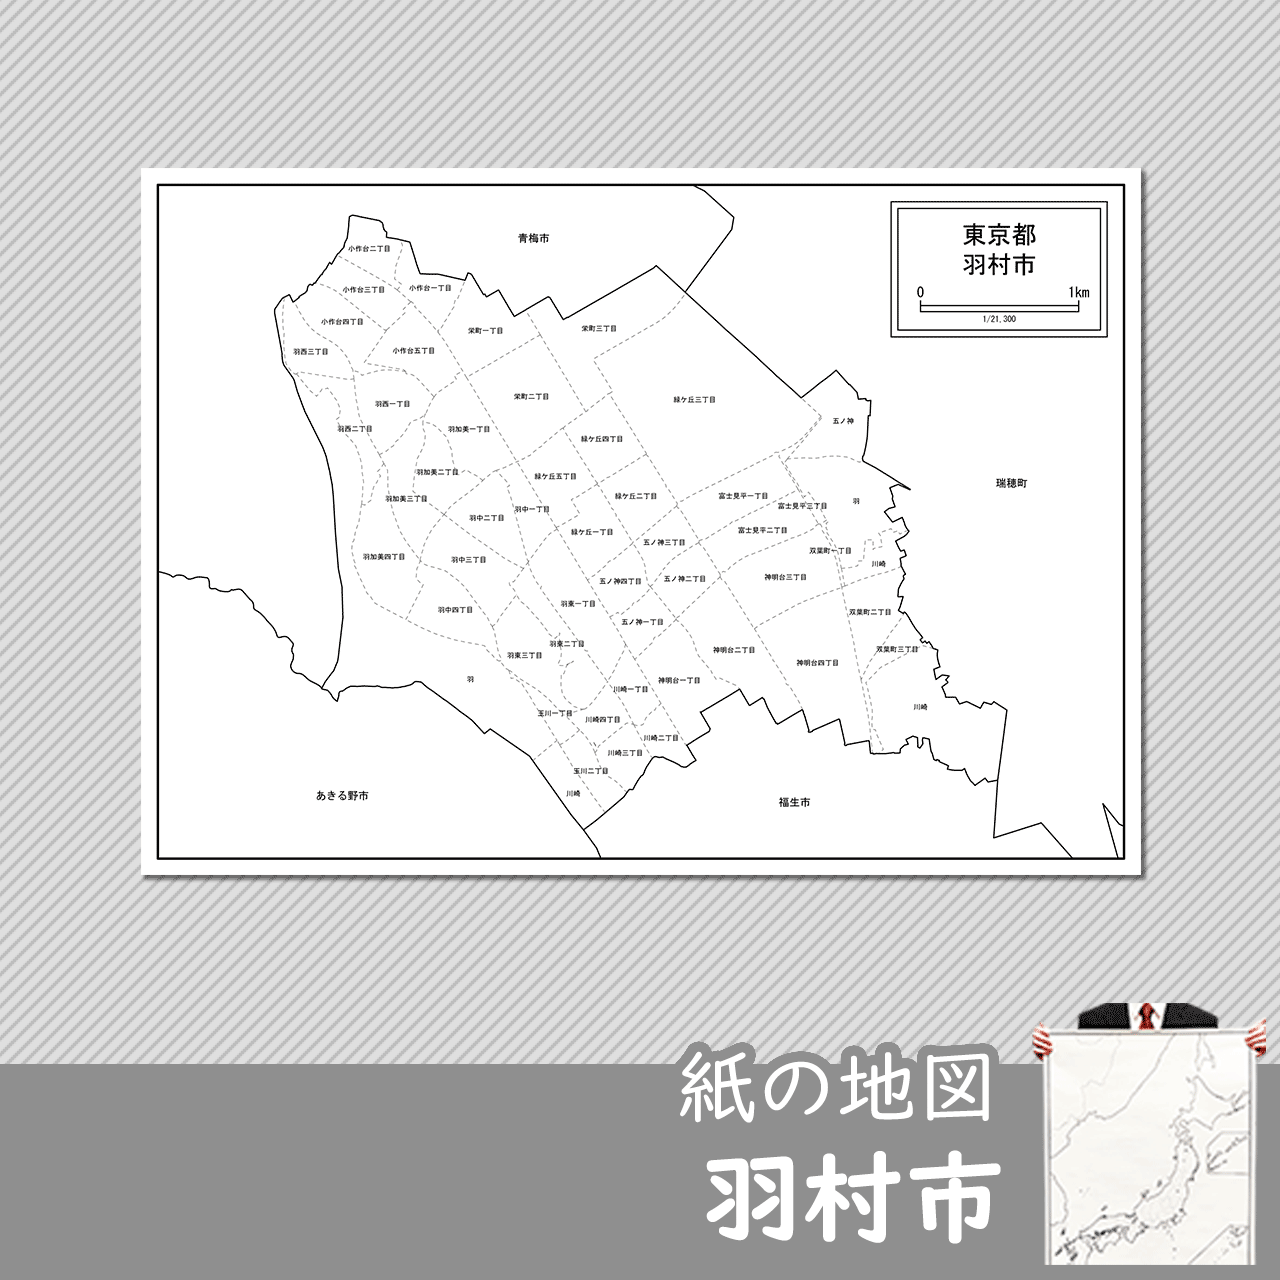 羽村市の紙の白地図のサムネイル